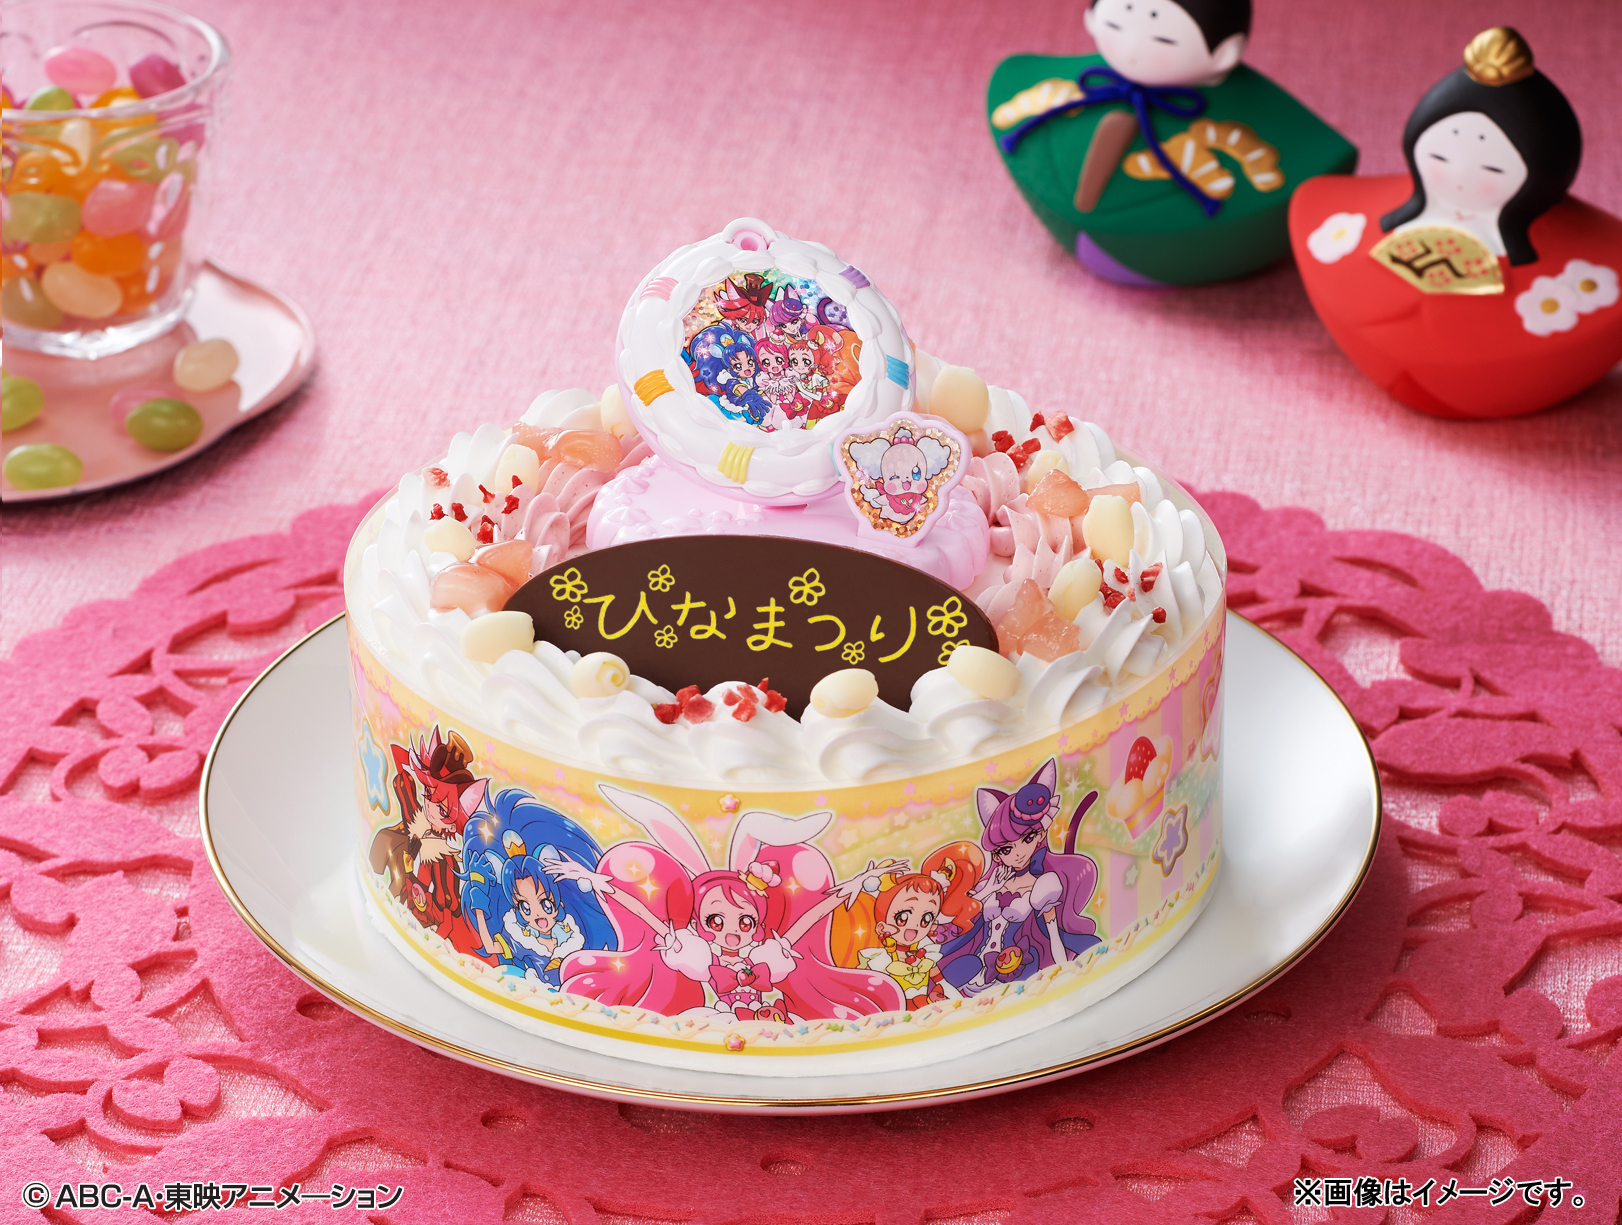 プリキュア新シリーズのケーキが登場 ひなまつりは キラキラ プリキュアアラモード でお祝い 株式会社バンダイ ネット戦略室のプレスリリース